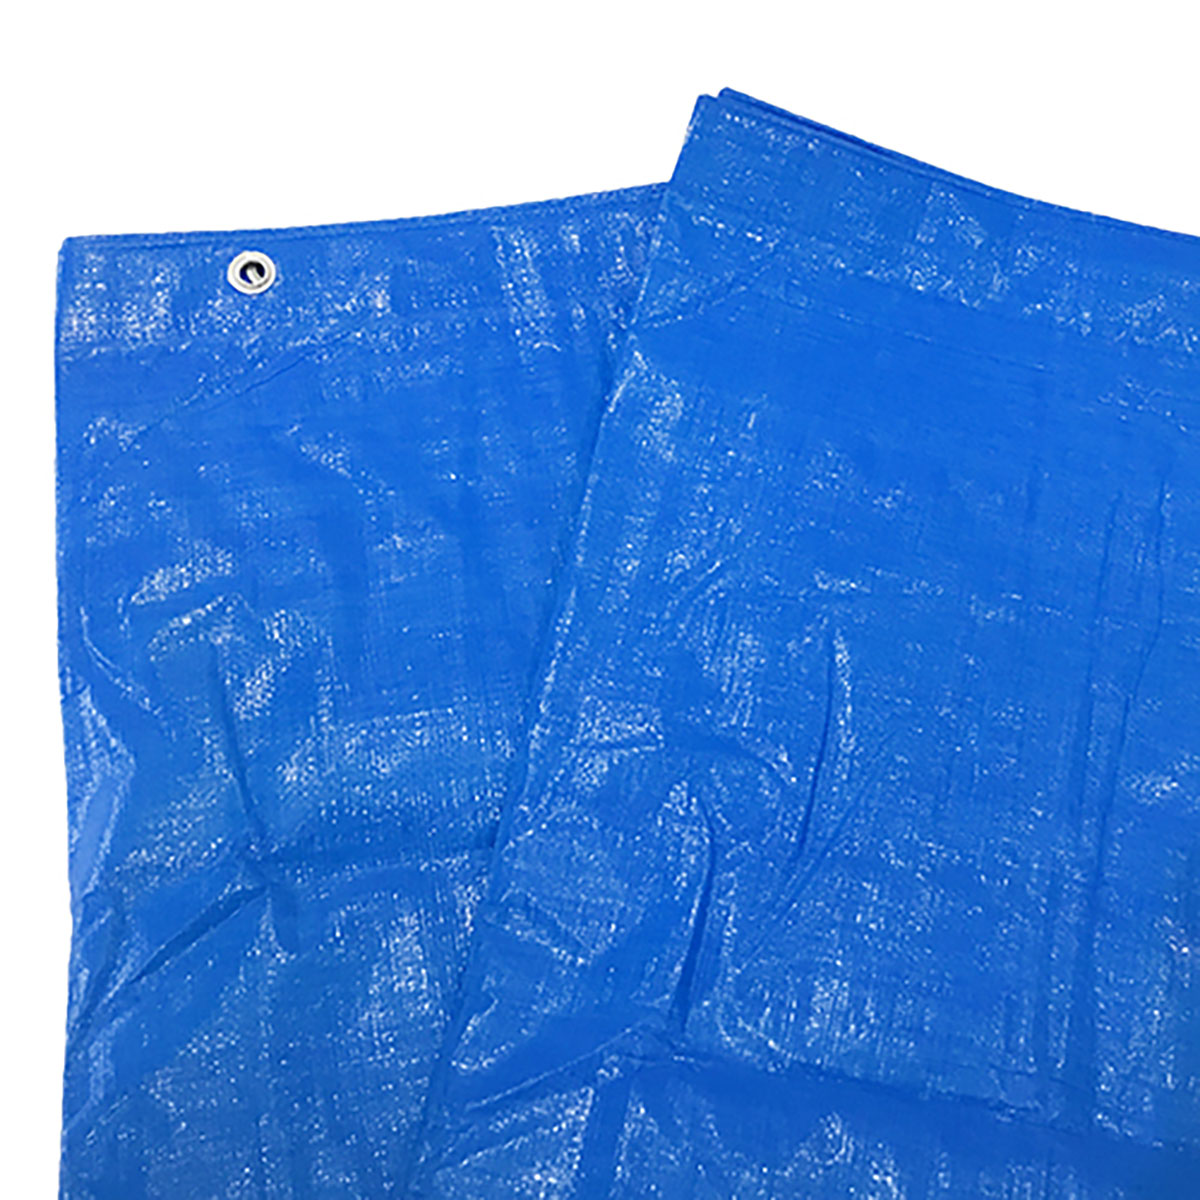 ブルーシート 巾約6.9×長さ約8.9m #3000